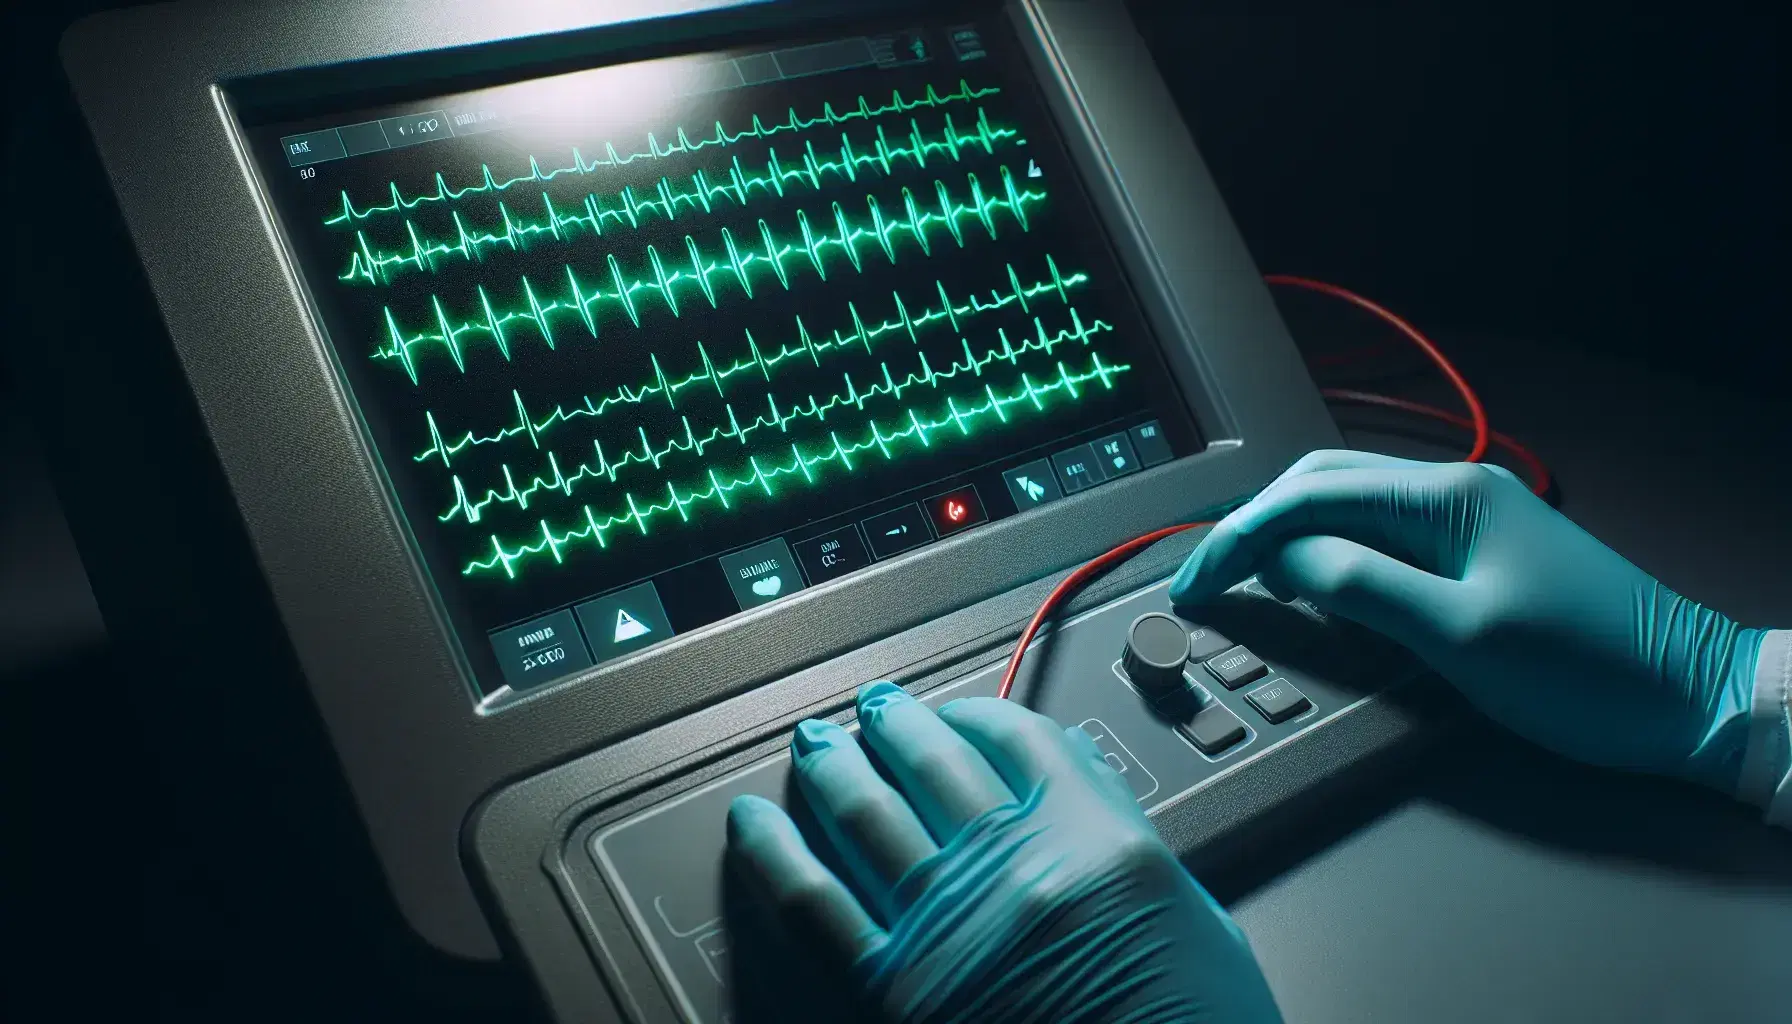 Vista cercana de un electrocardiograma en funcionamiento con líneas onduladas verdes sobre fondo negro, manos con guantes azules ajustando el aparato y cable rojo parcialmente visible.